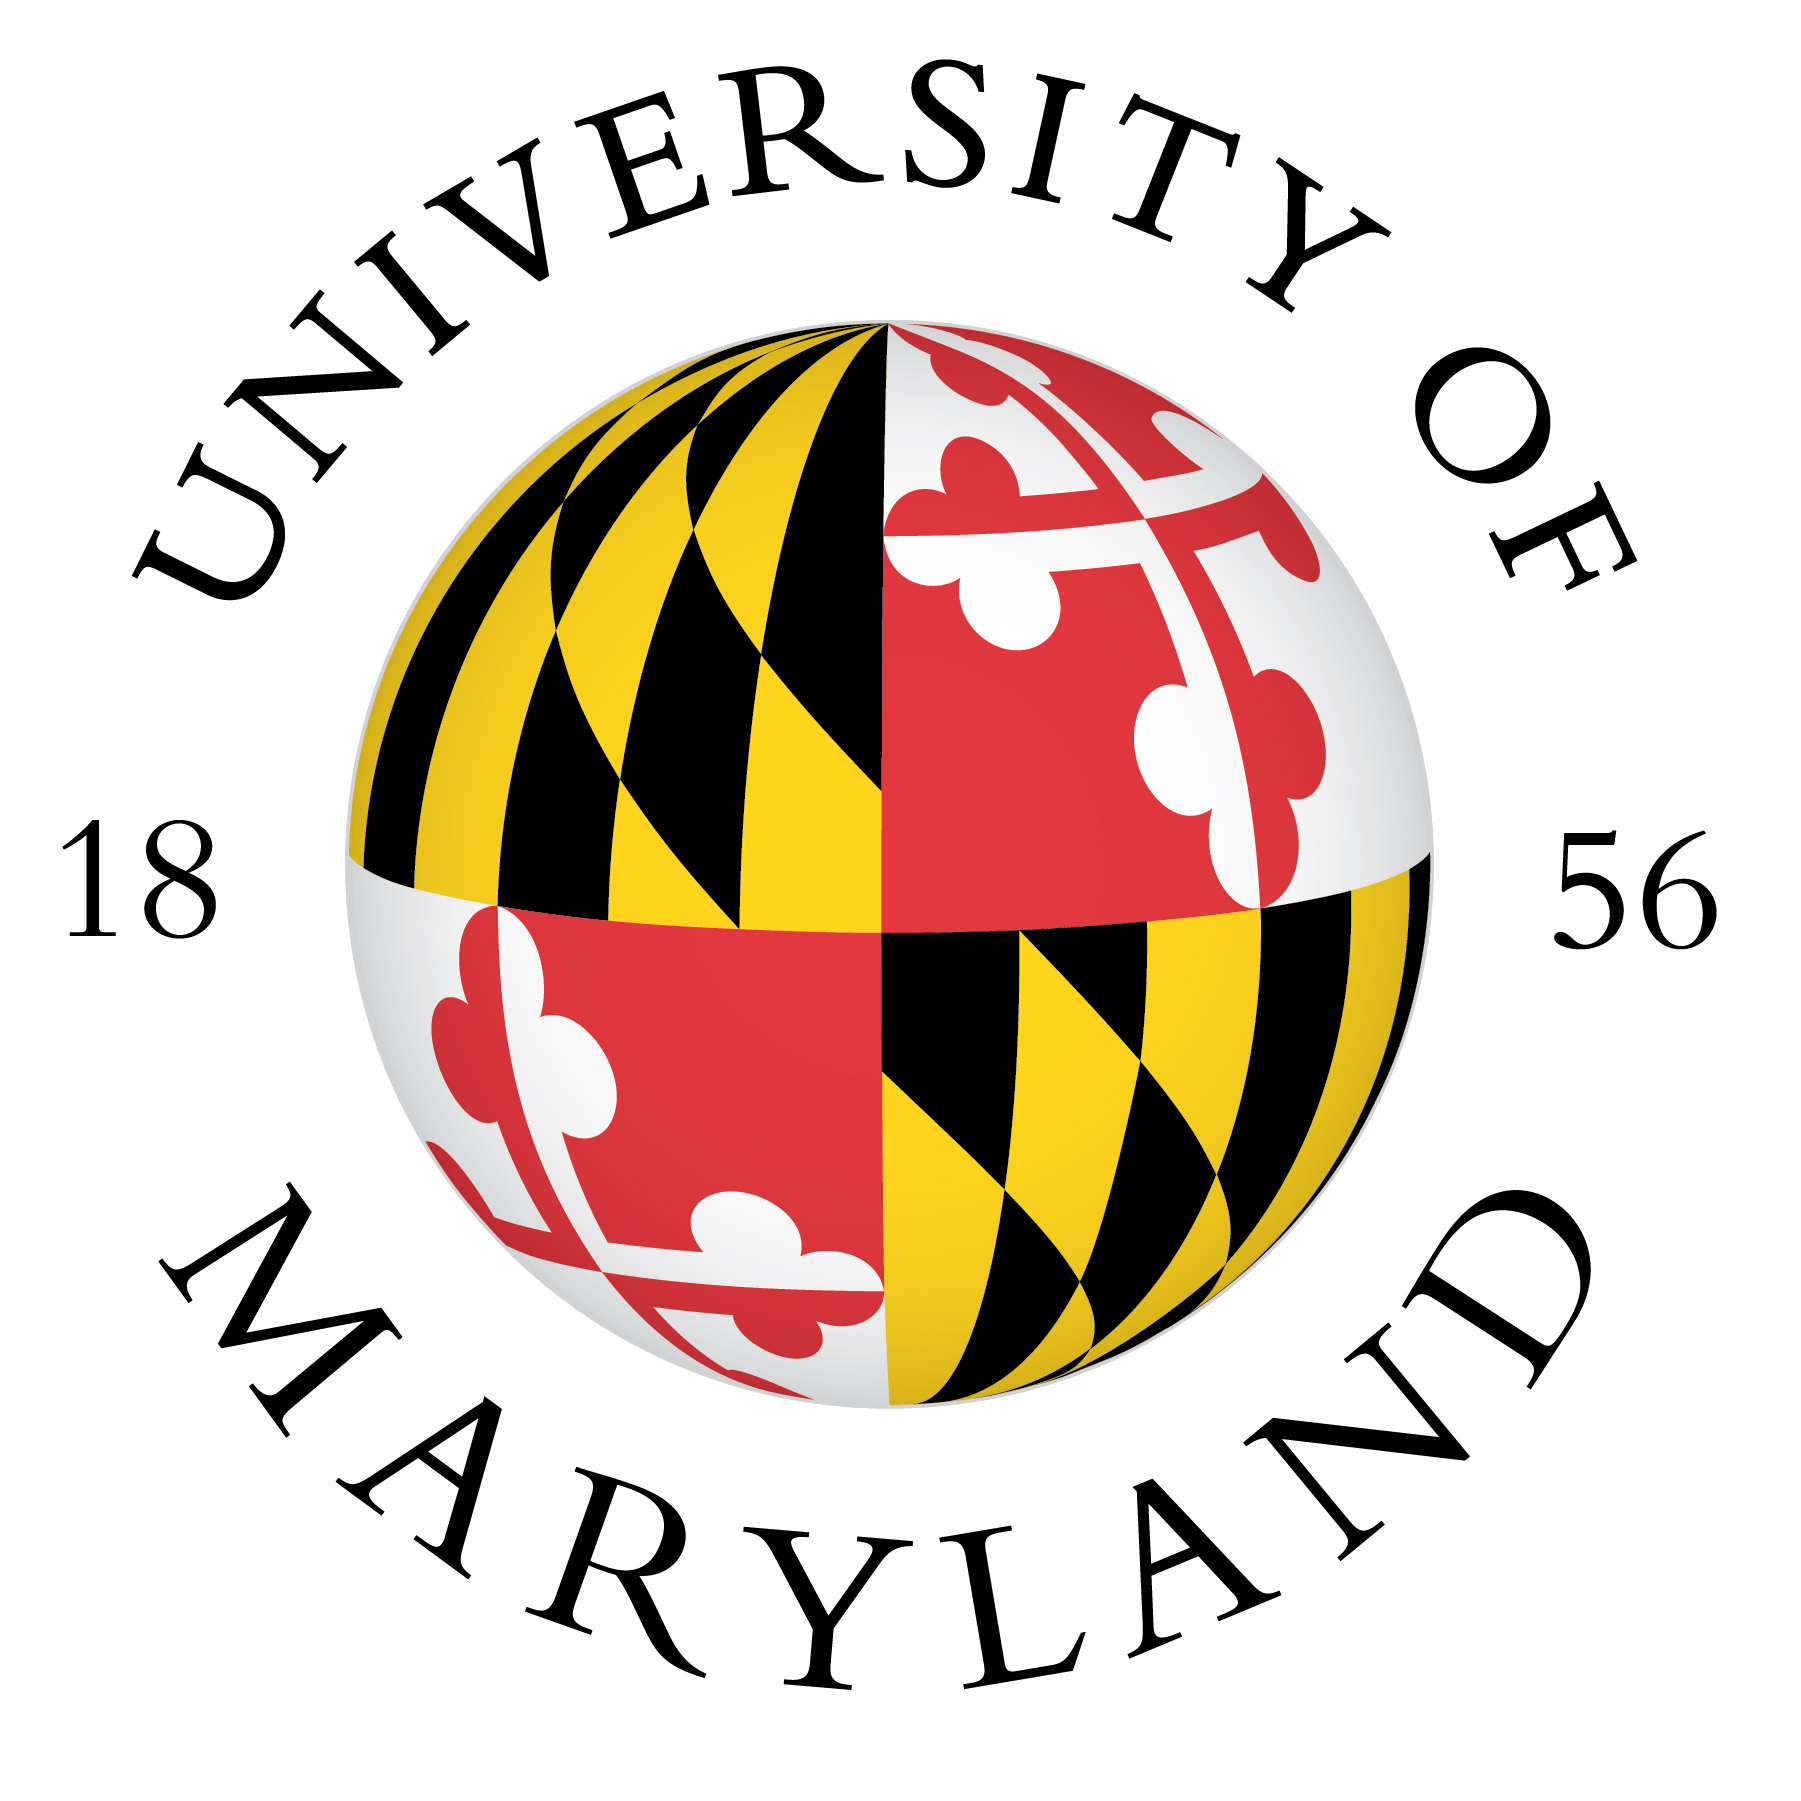 University of Maryland seal/logo